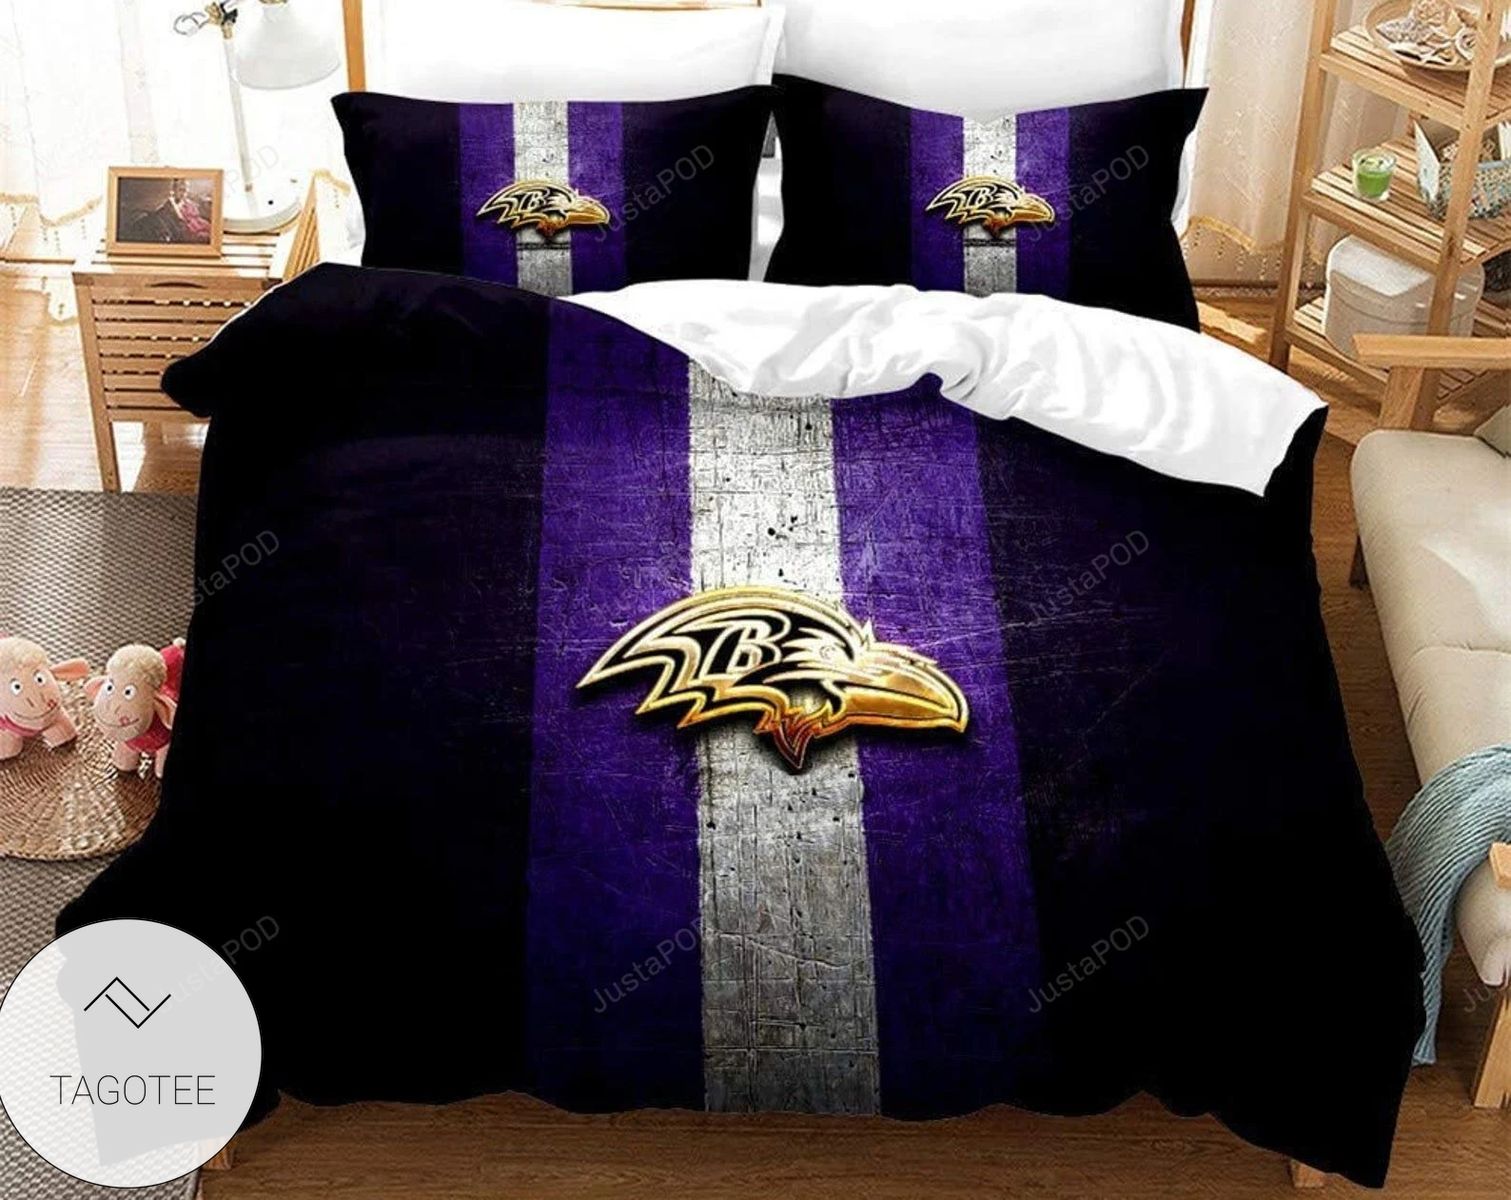 3D Baltimore Ravens Duvet Cover Set, Nfl Baltimore Ravens Bedding Set, Baltimore Ravens Logo Inspired Bedding Set, Nfl Fan Gift Ng